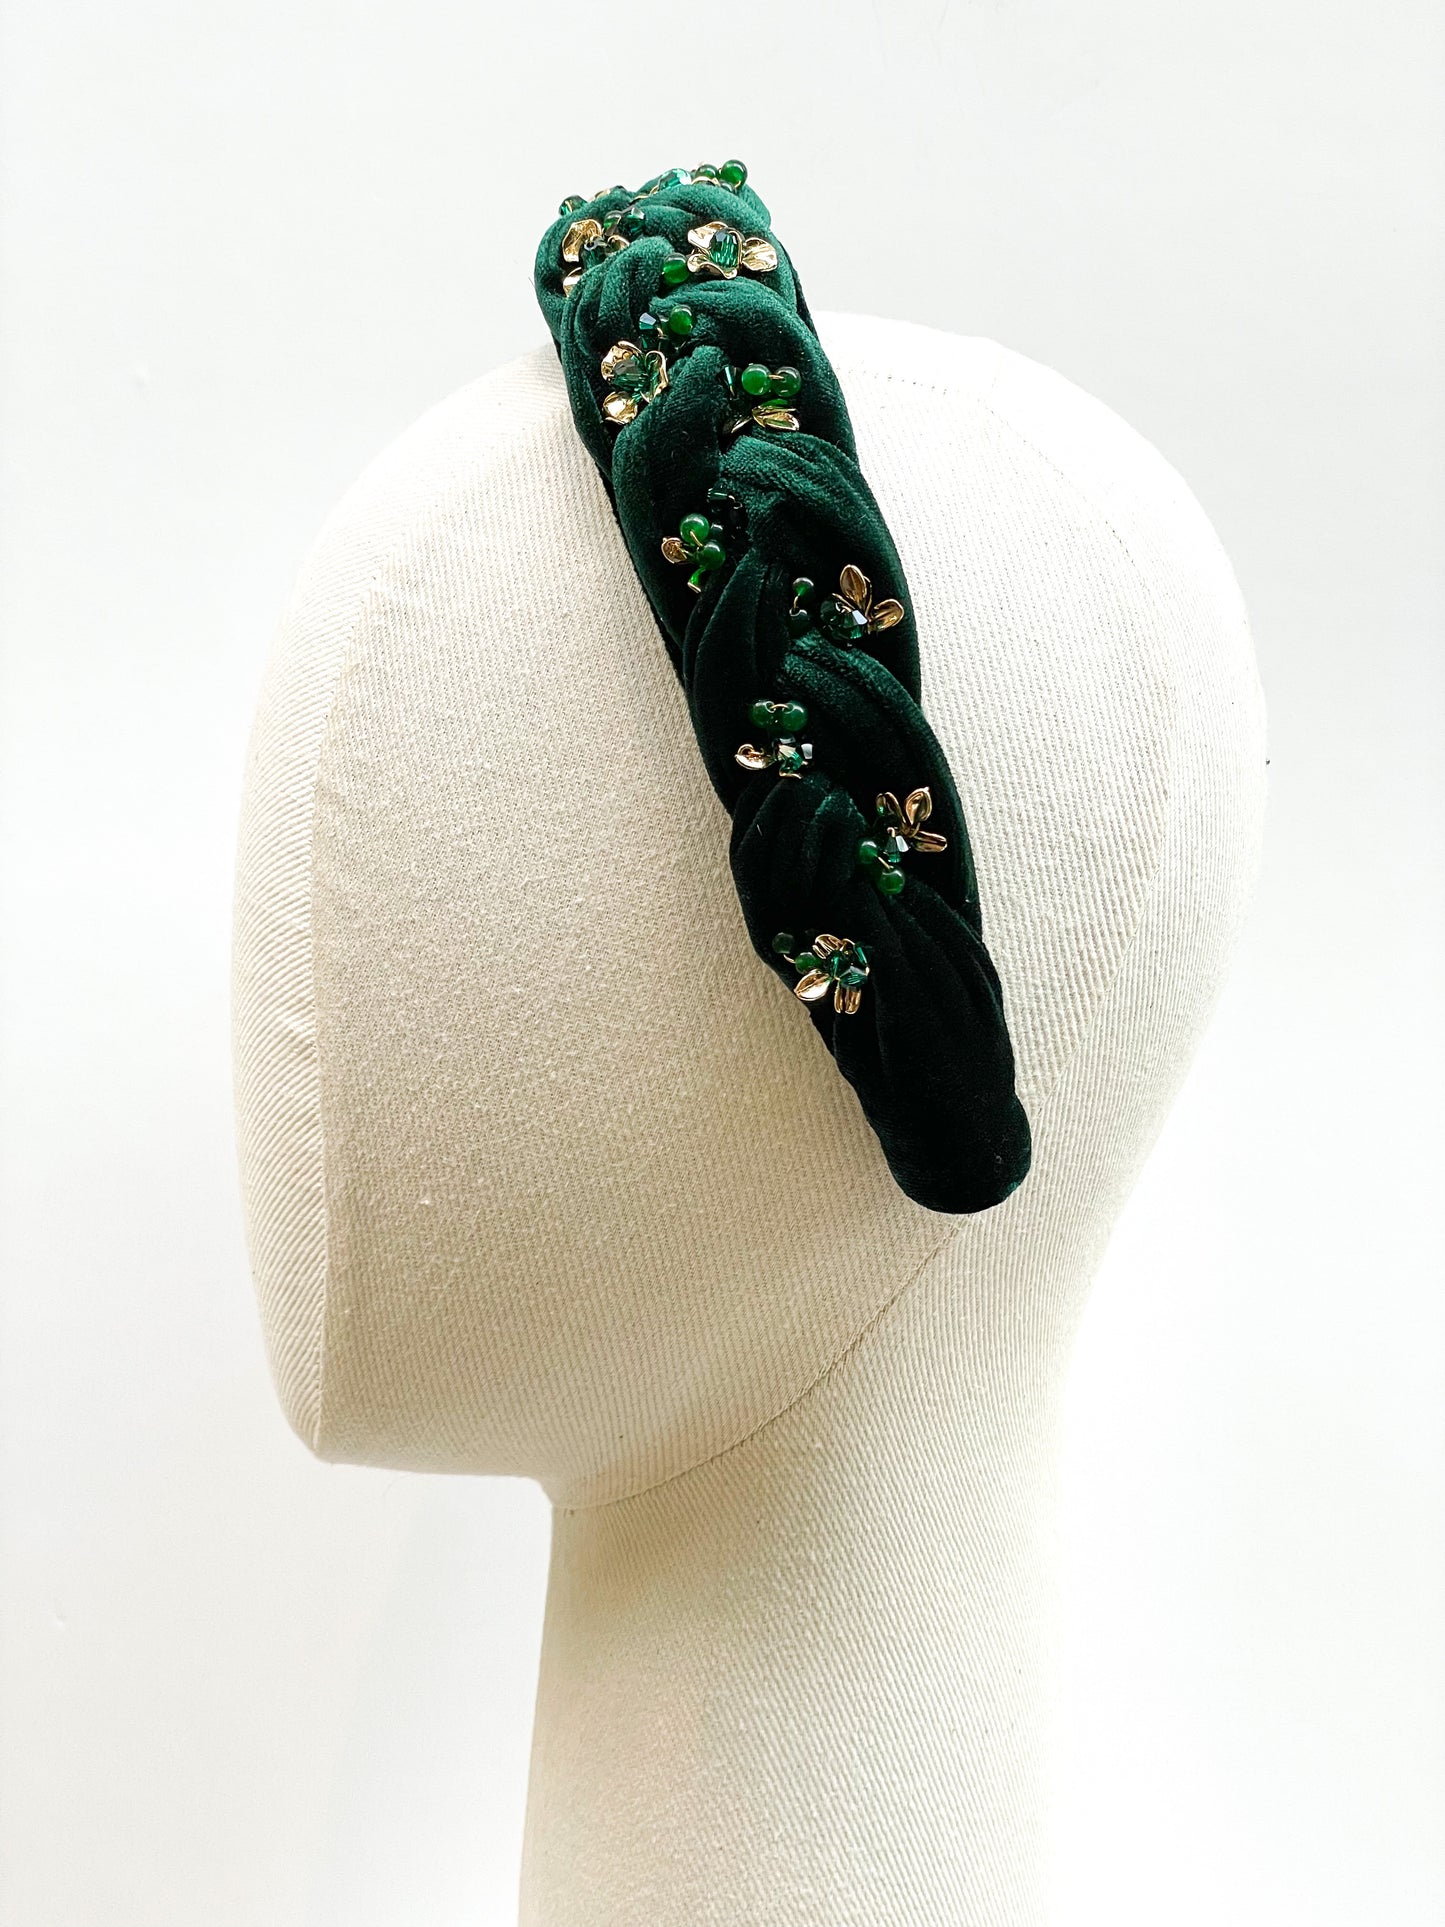 Velvette Emerald Headdress